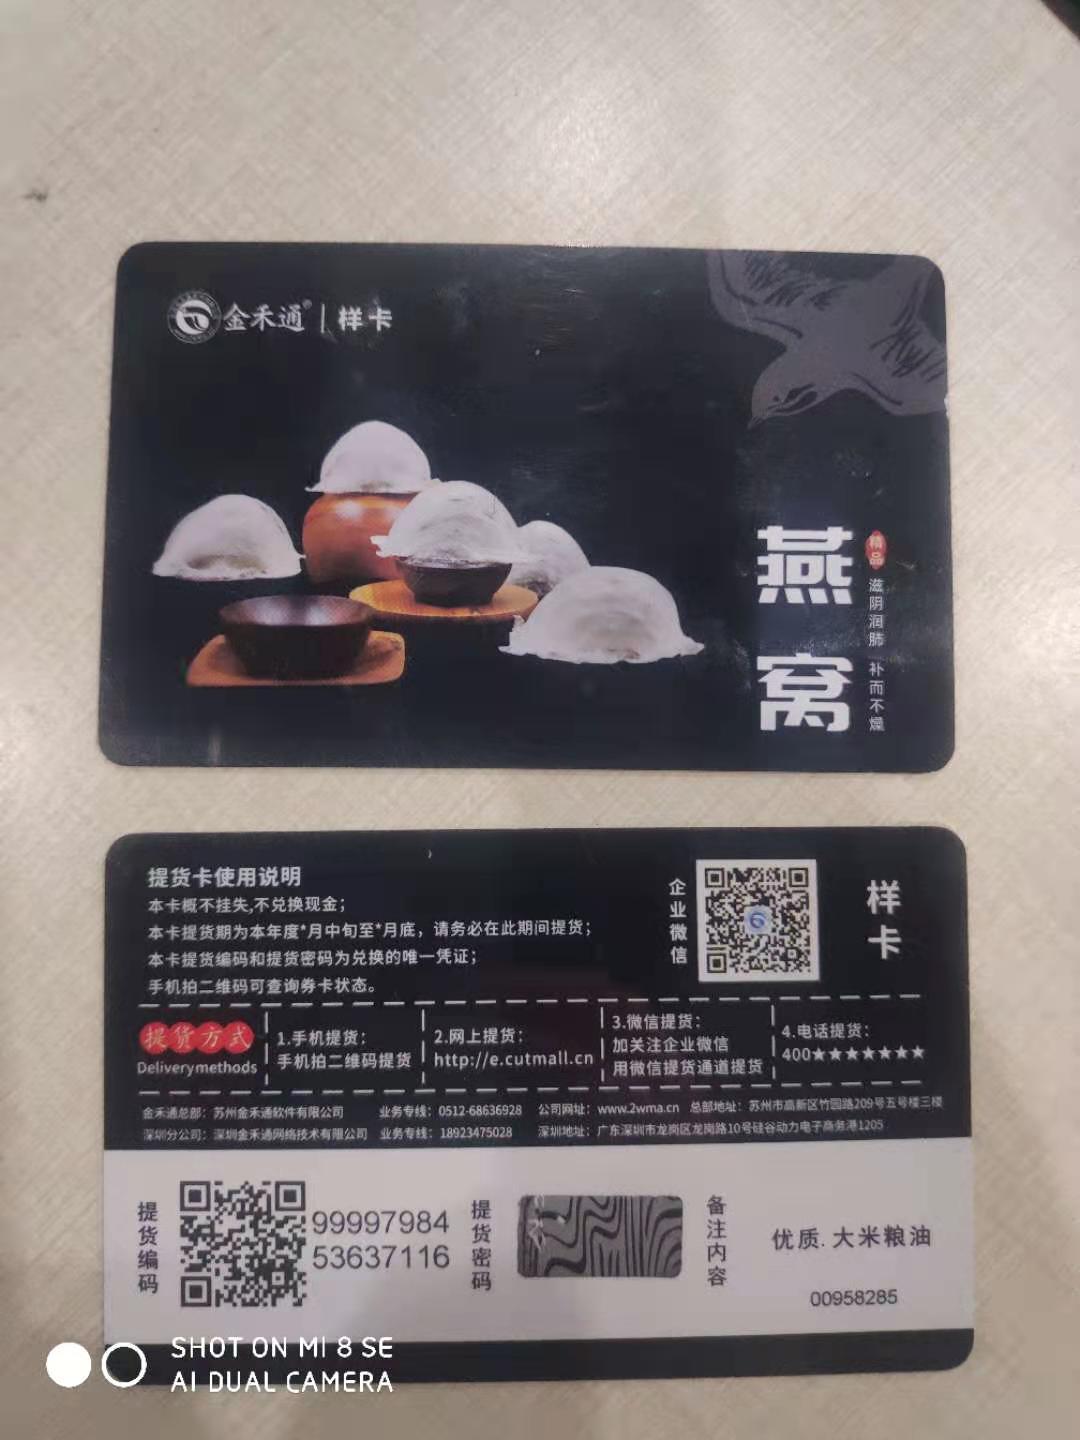 燕窝年卡季卡管理软件   含印刷全套服务 深圳金禾通  服务市场14年